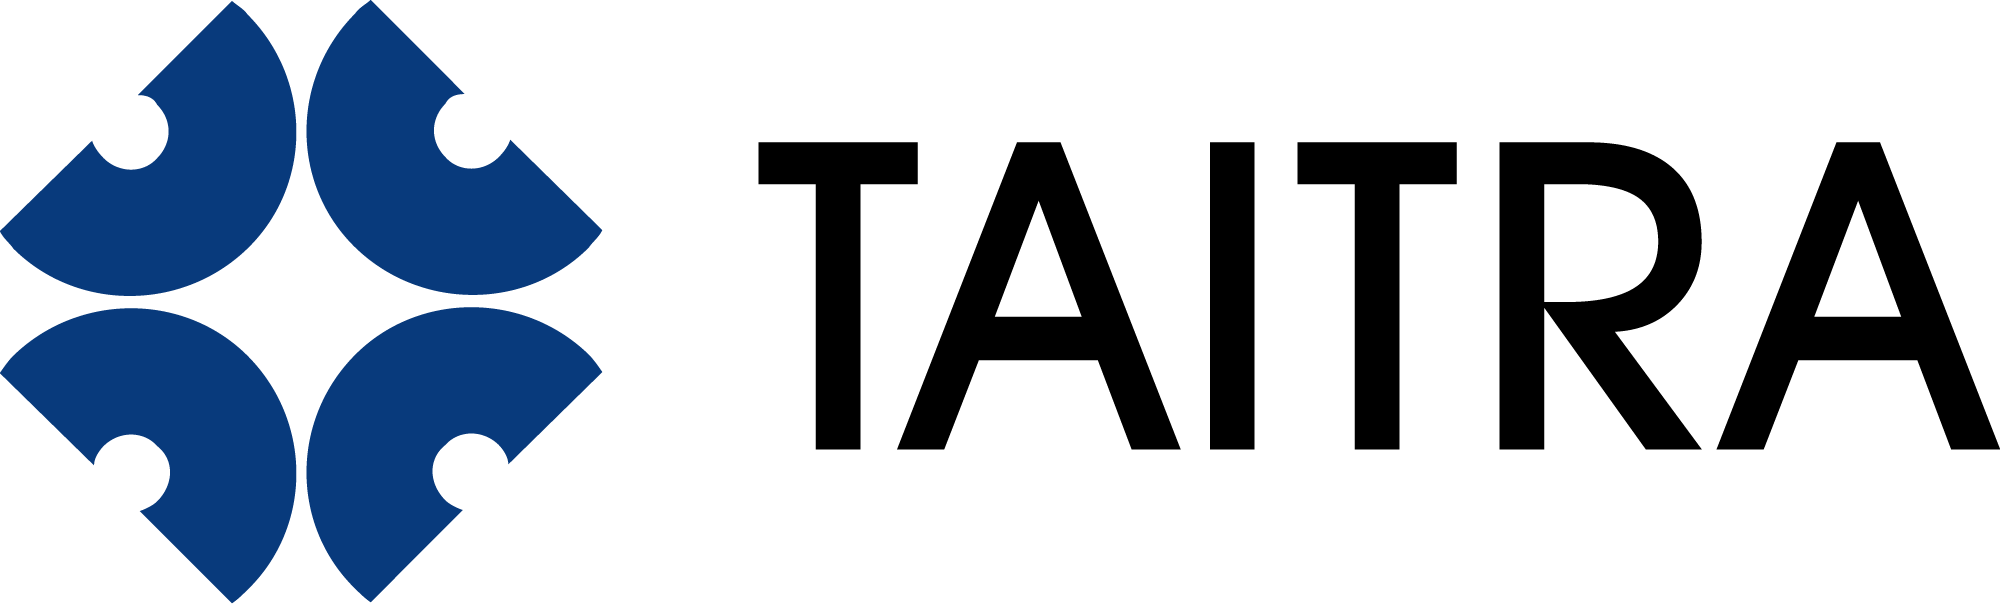 TAITRA Logo橫式去背